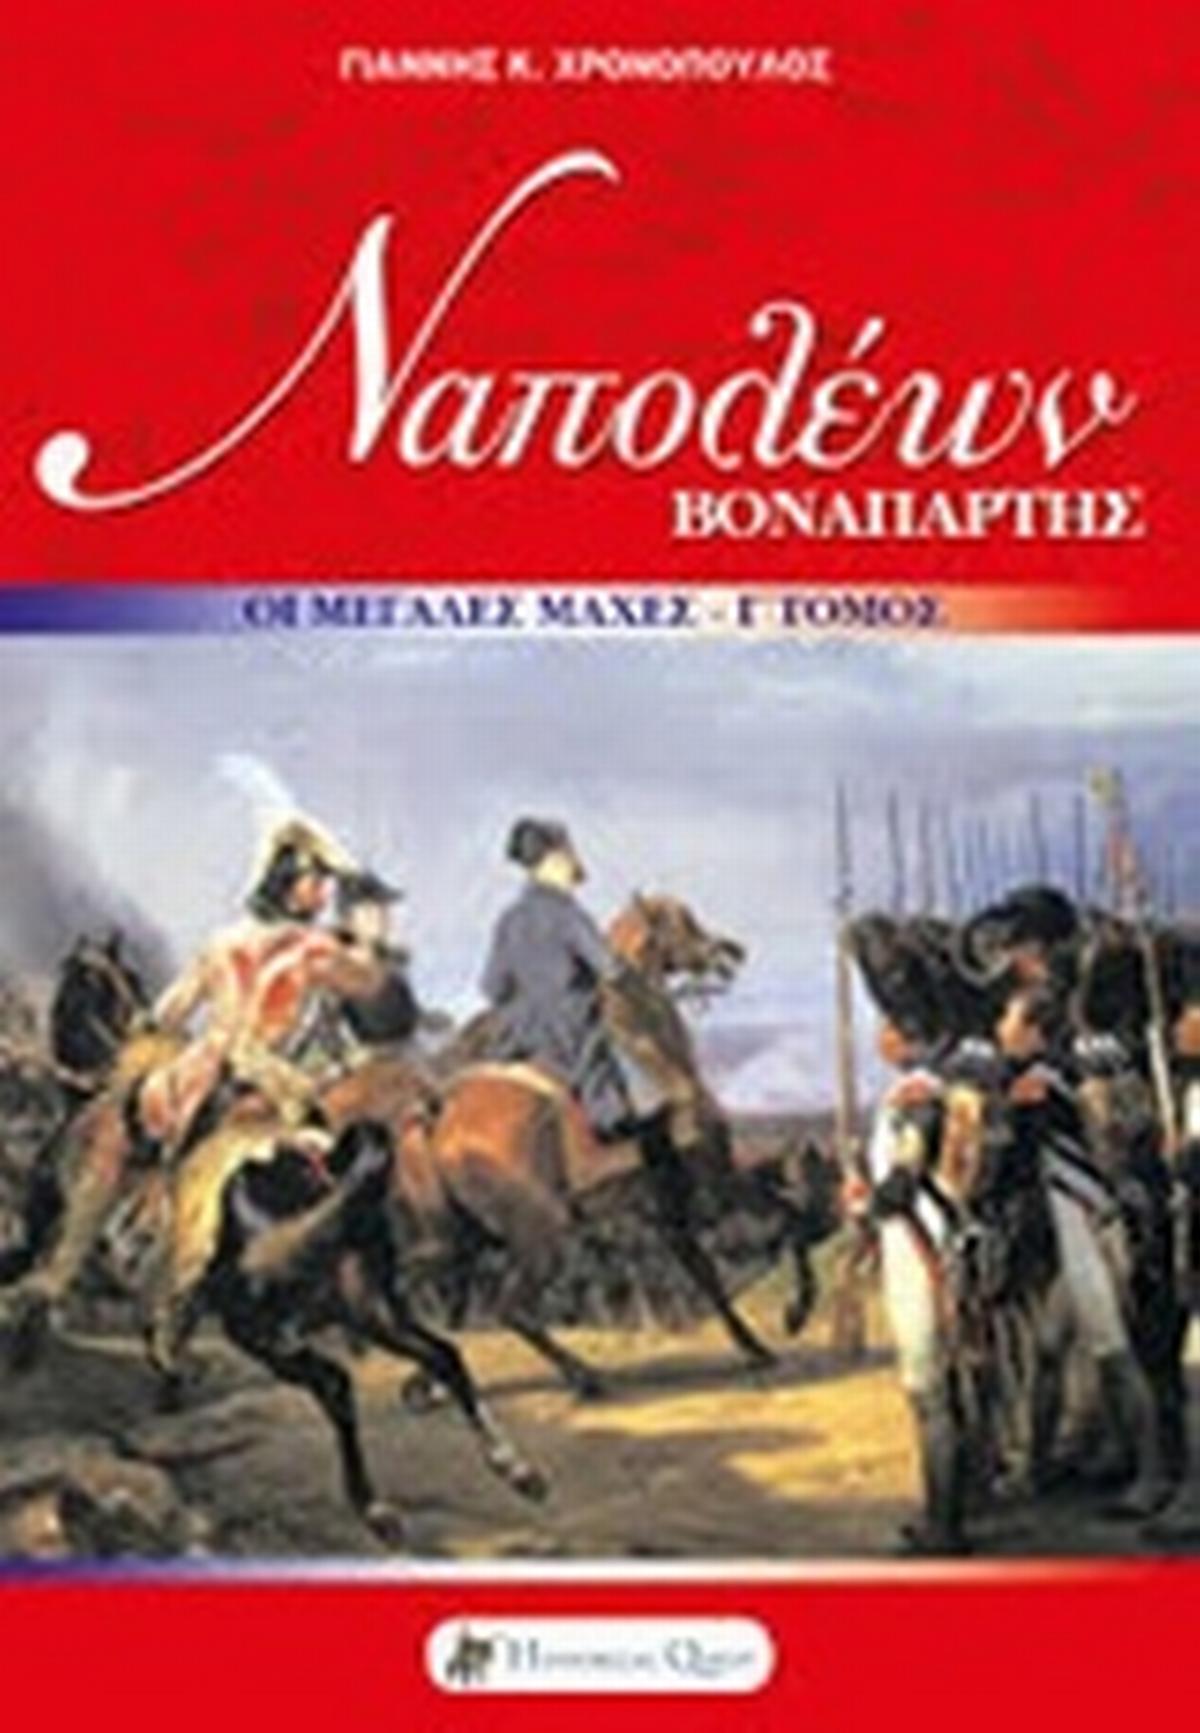 Ναπολέων Βοναπάρτης: Οι μεγάλες εκστρατείες